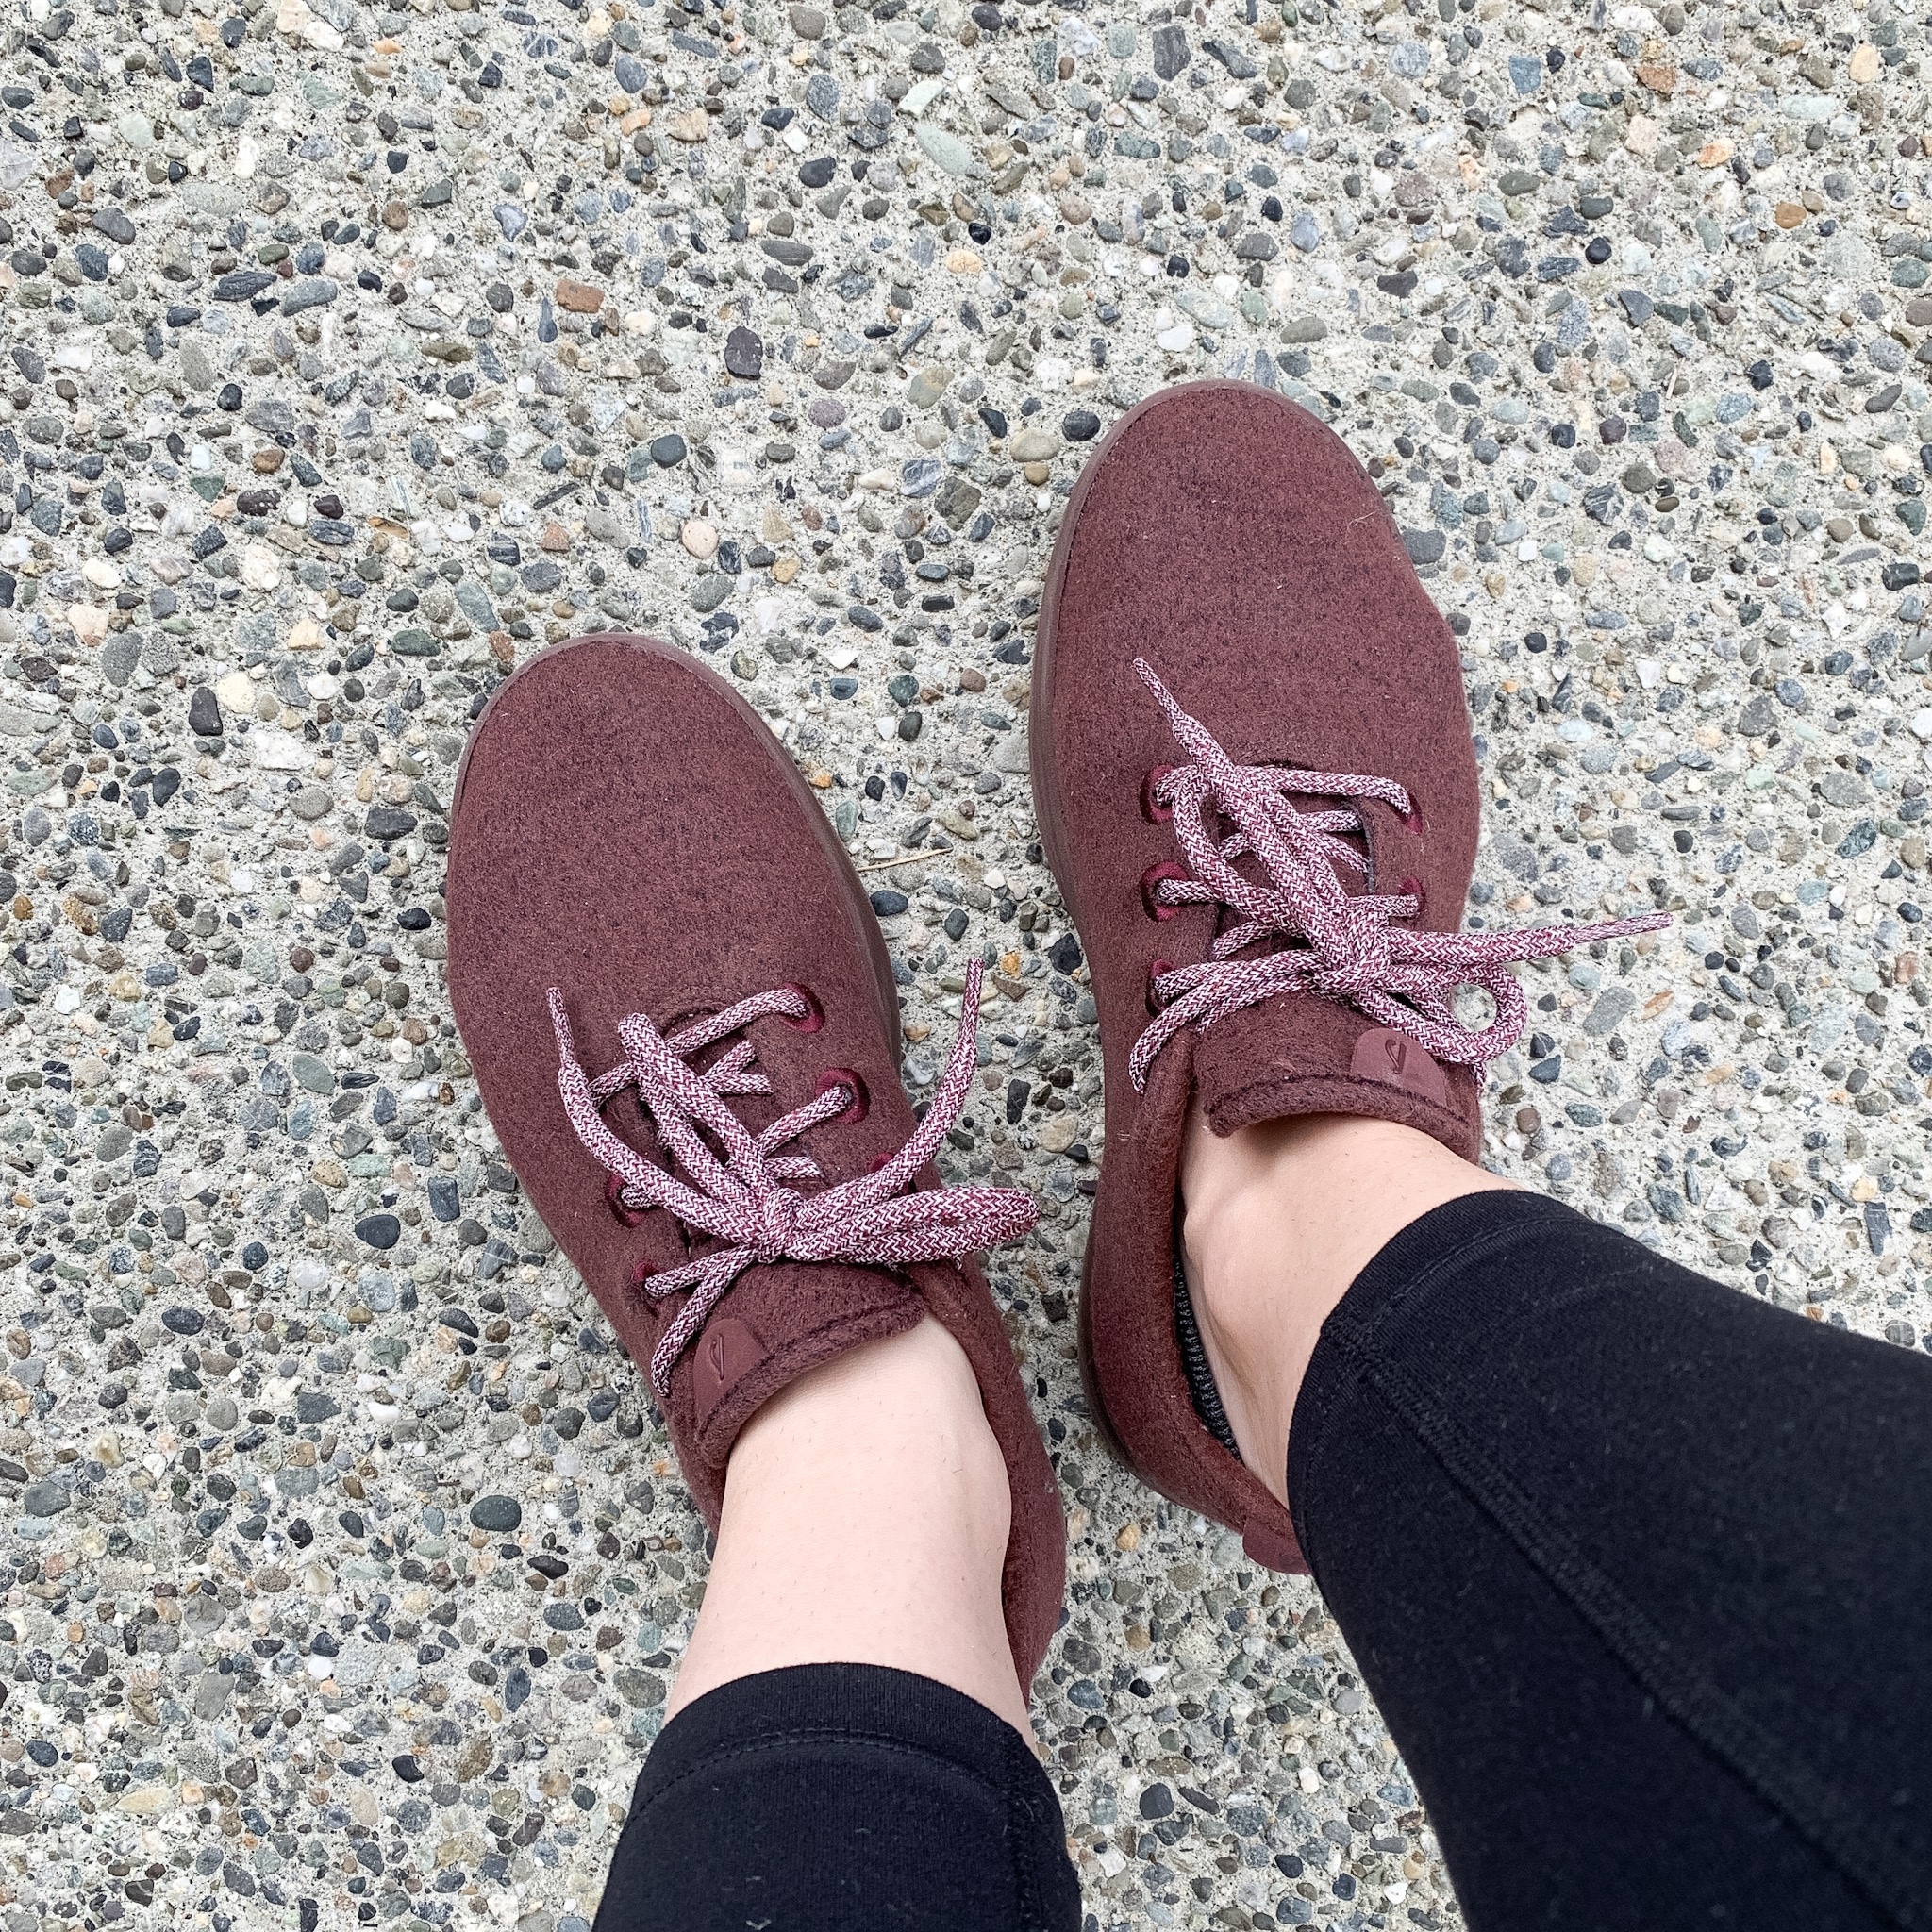 Allbirds shoes on concrete